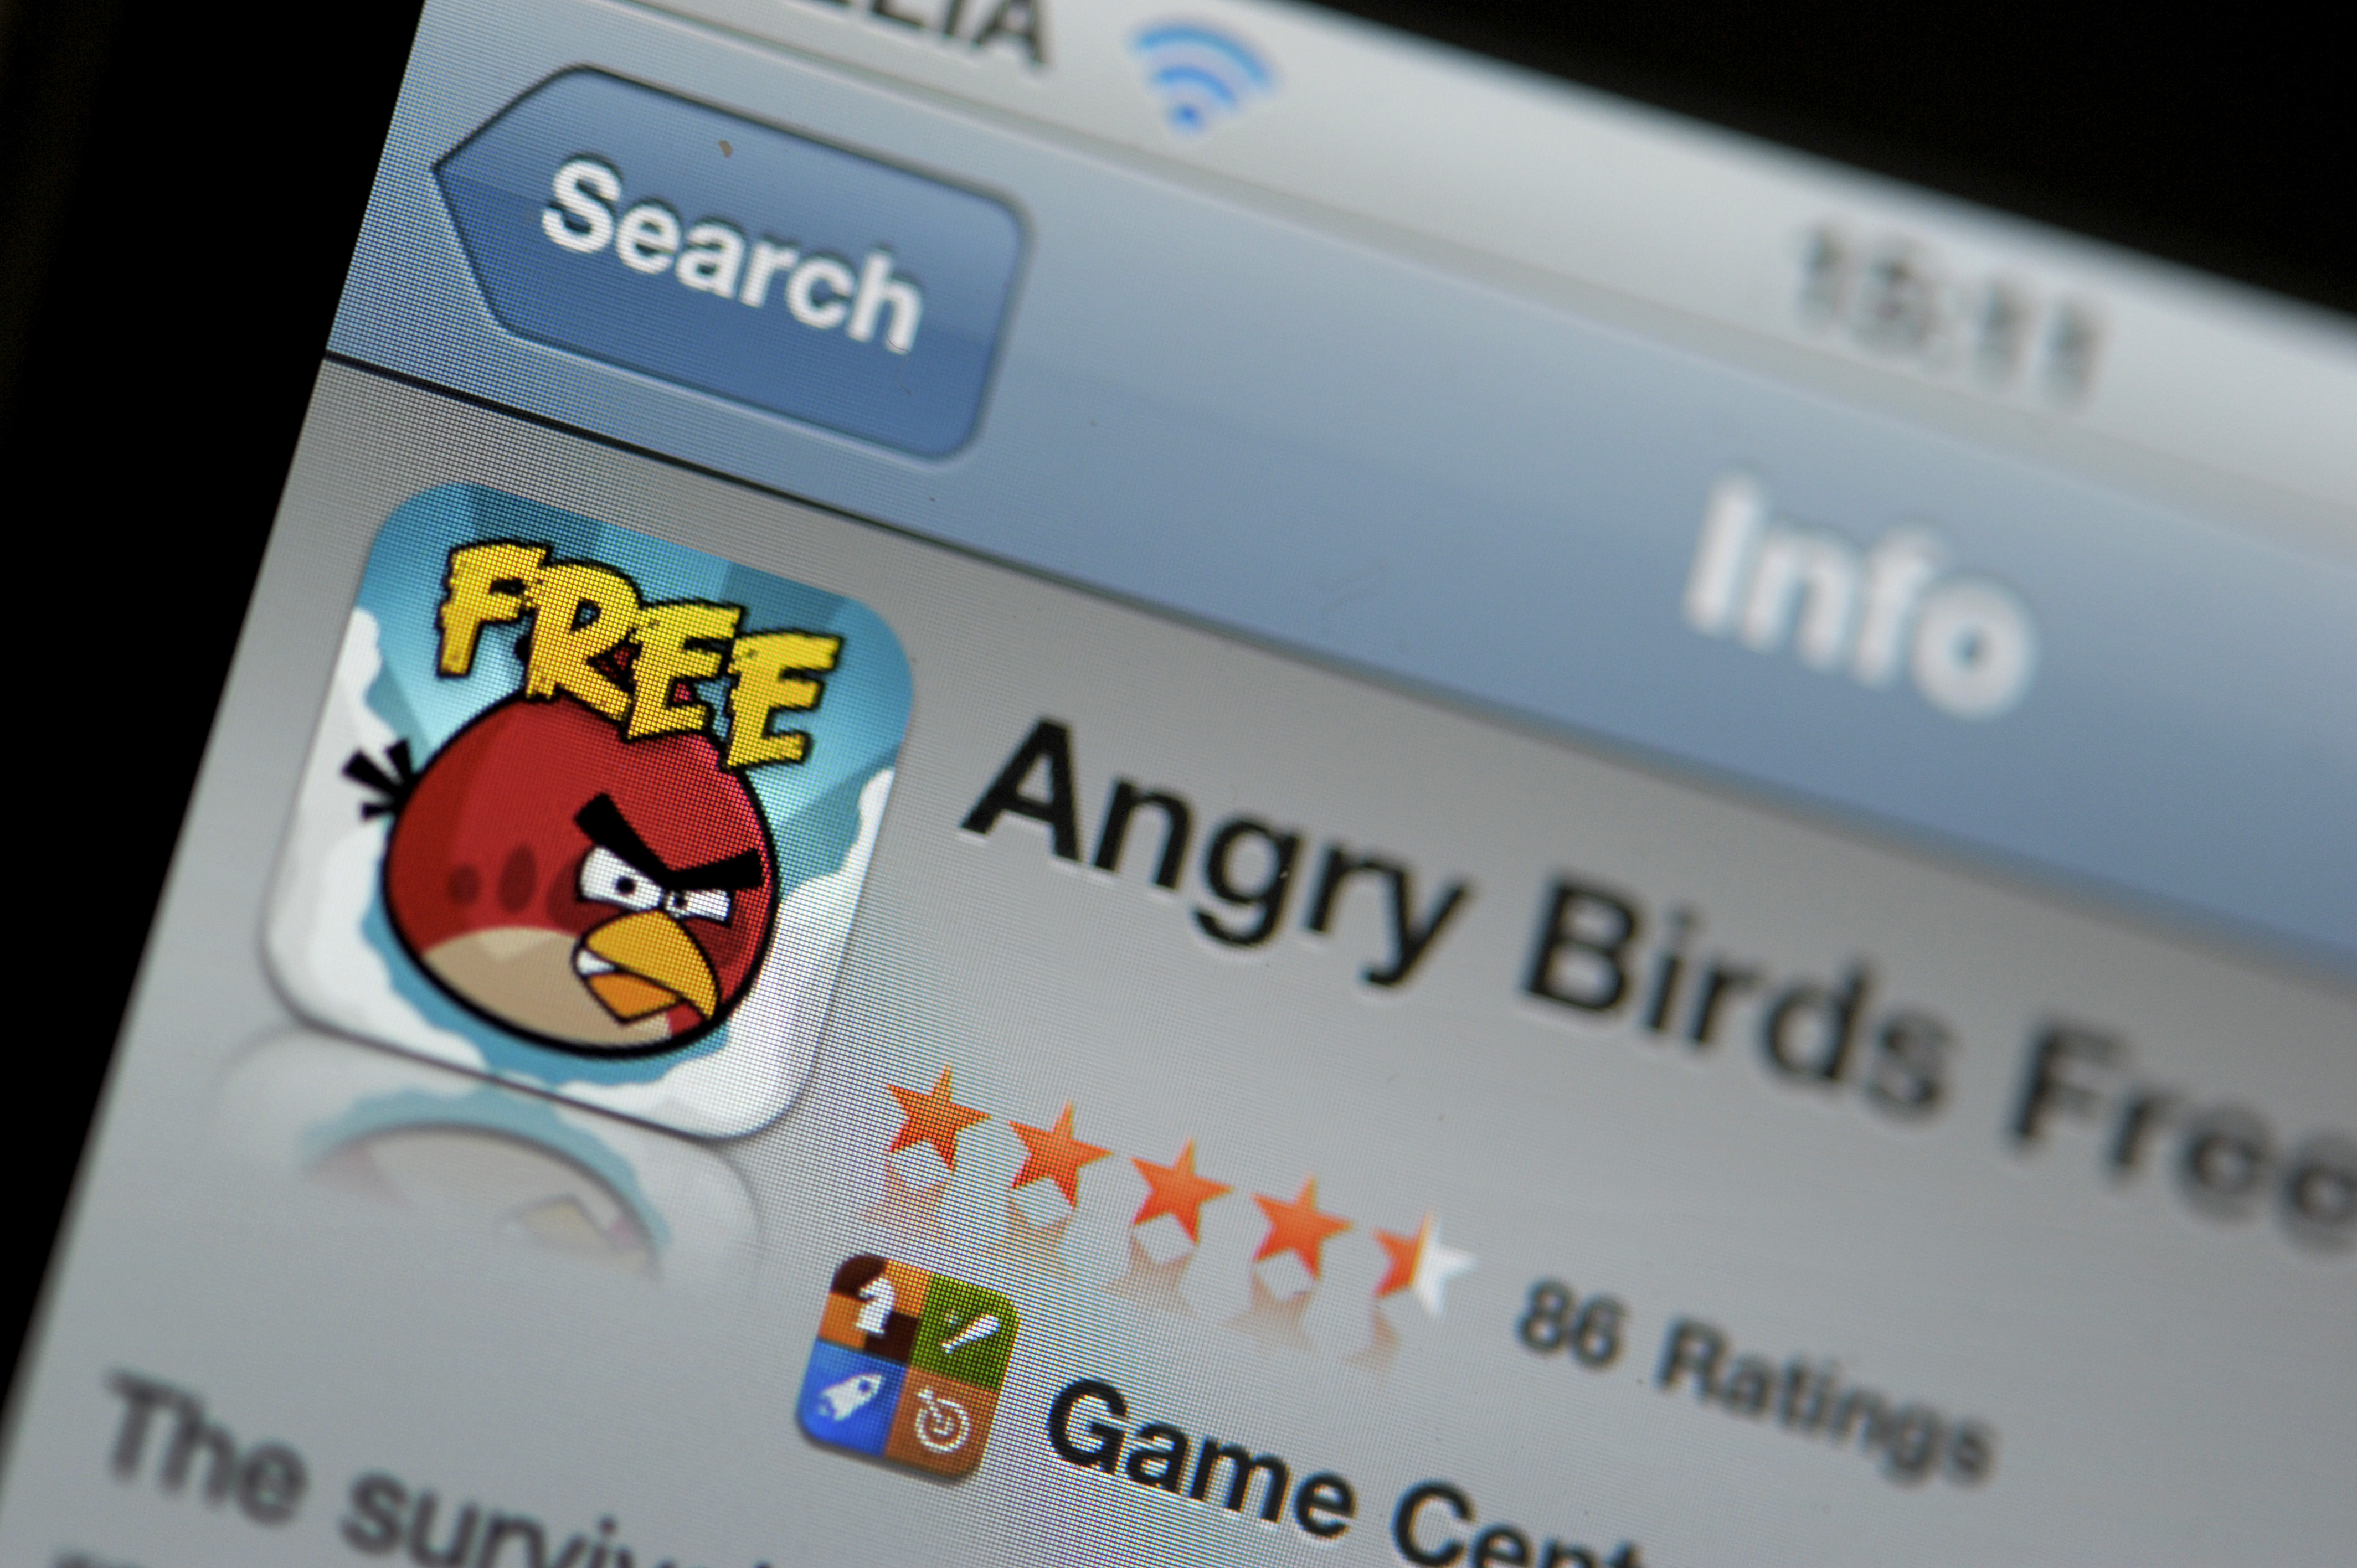 Angry birds har toppat App Store-listorna i stort sett ända sedan spelet lanserades år 2009.